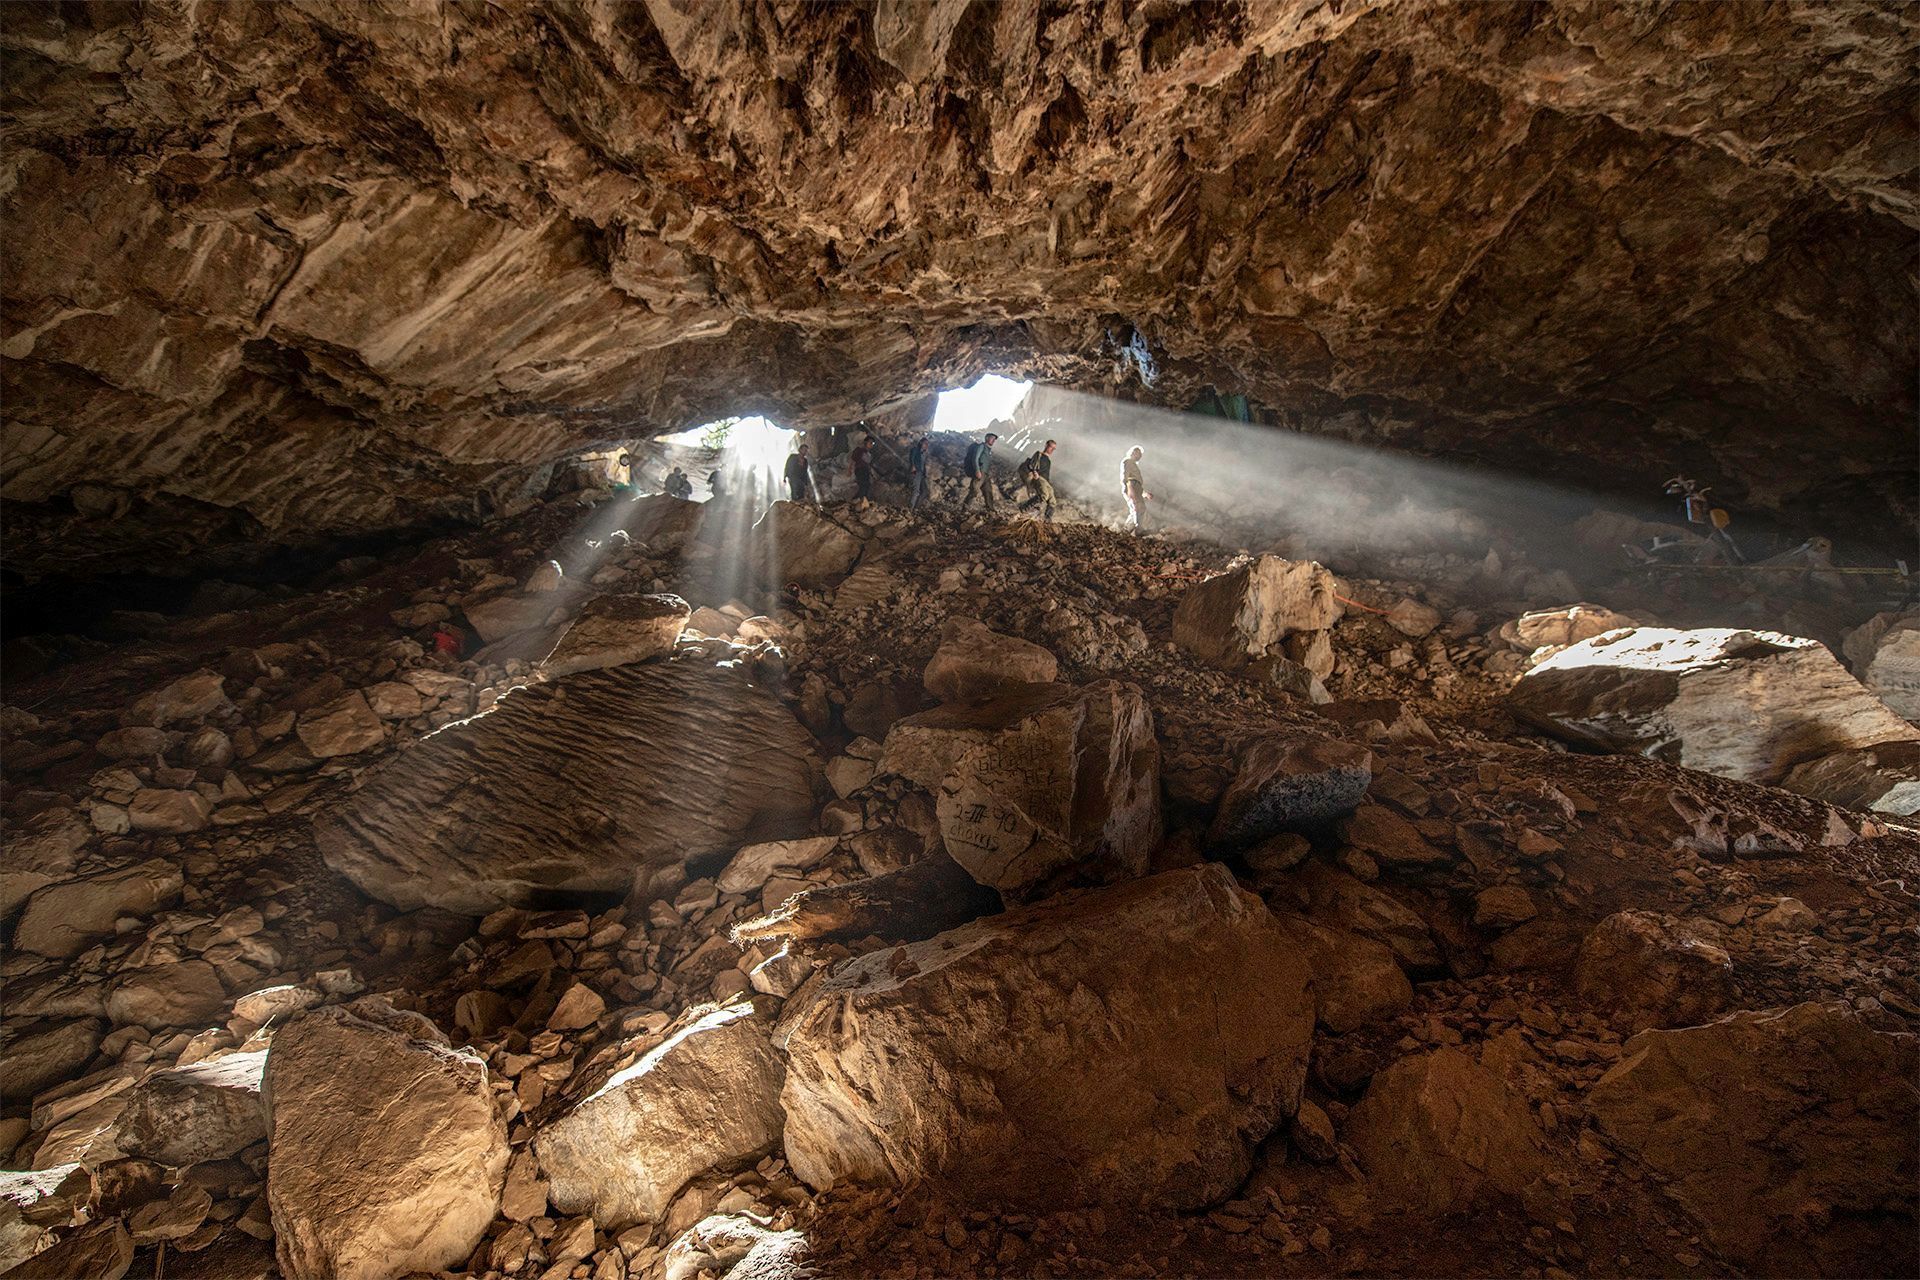 jeskyně clovis archeologie Zacatecas